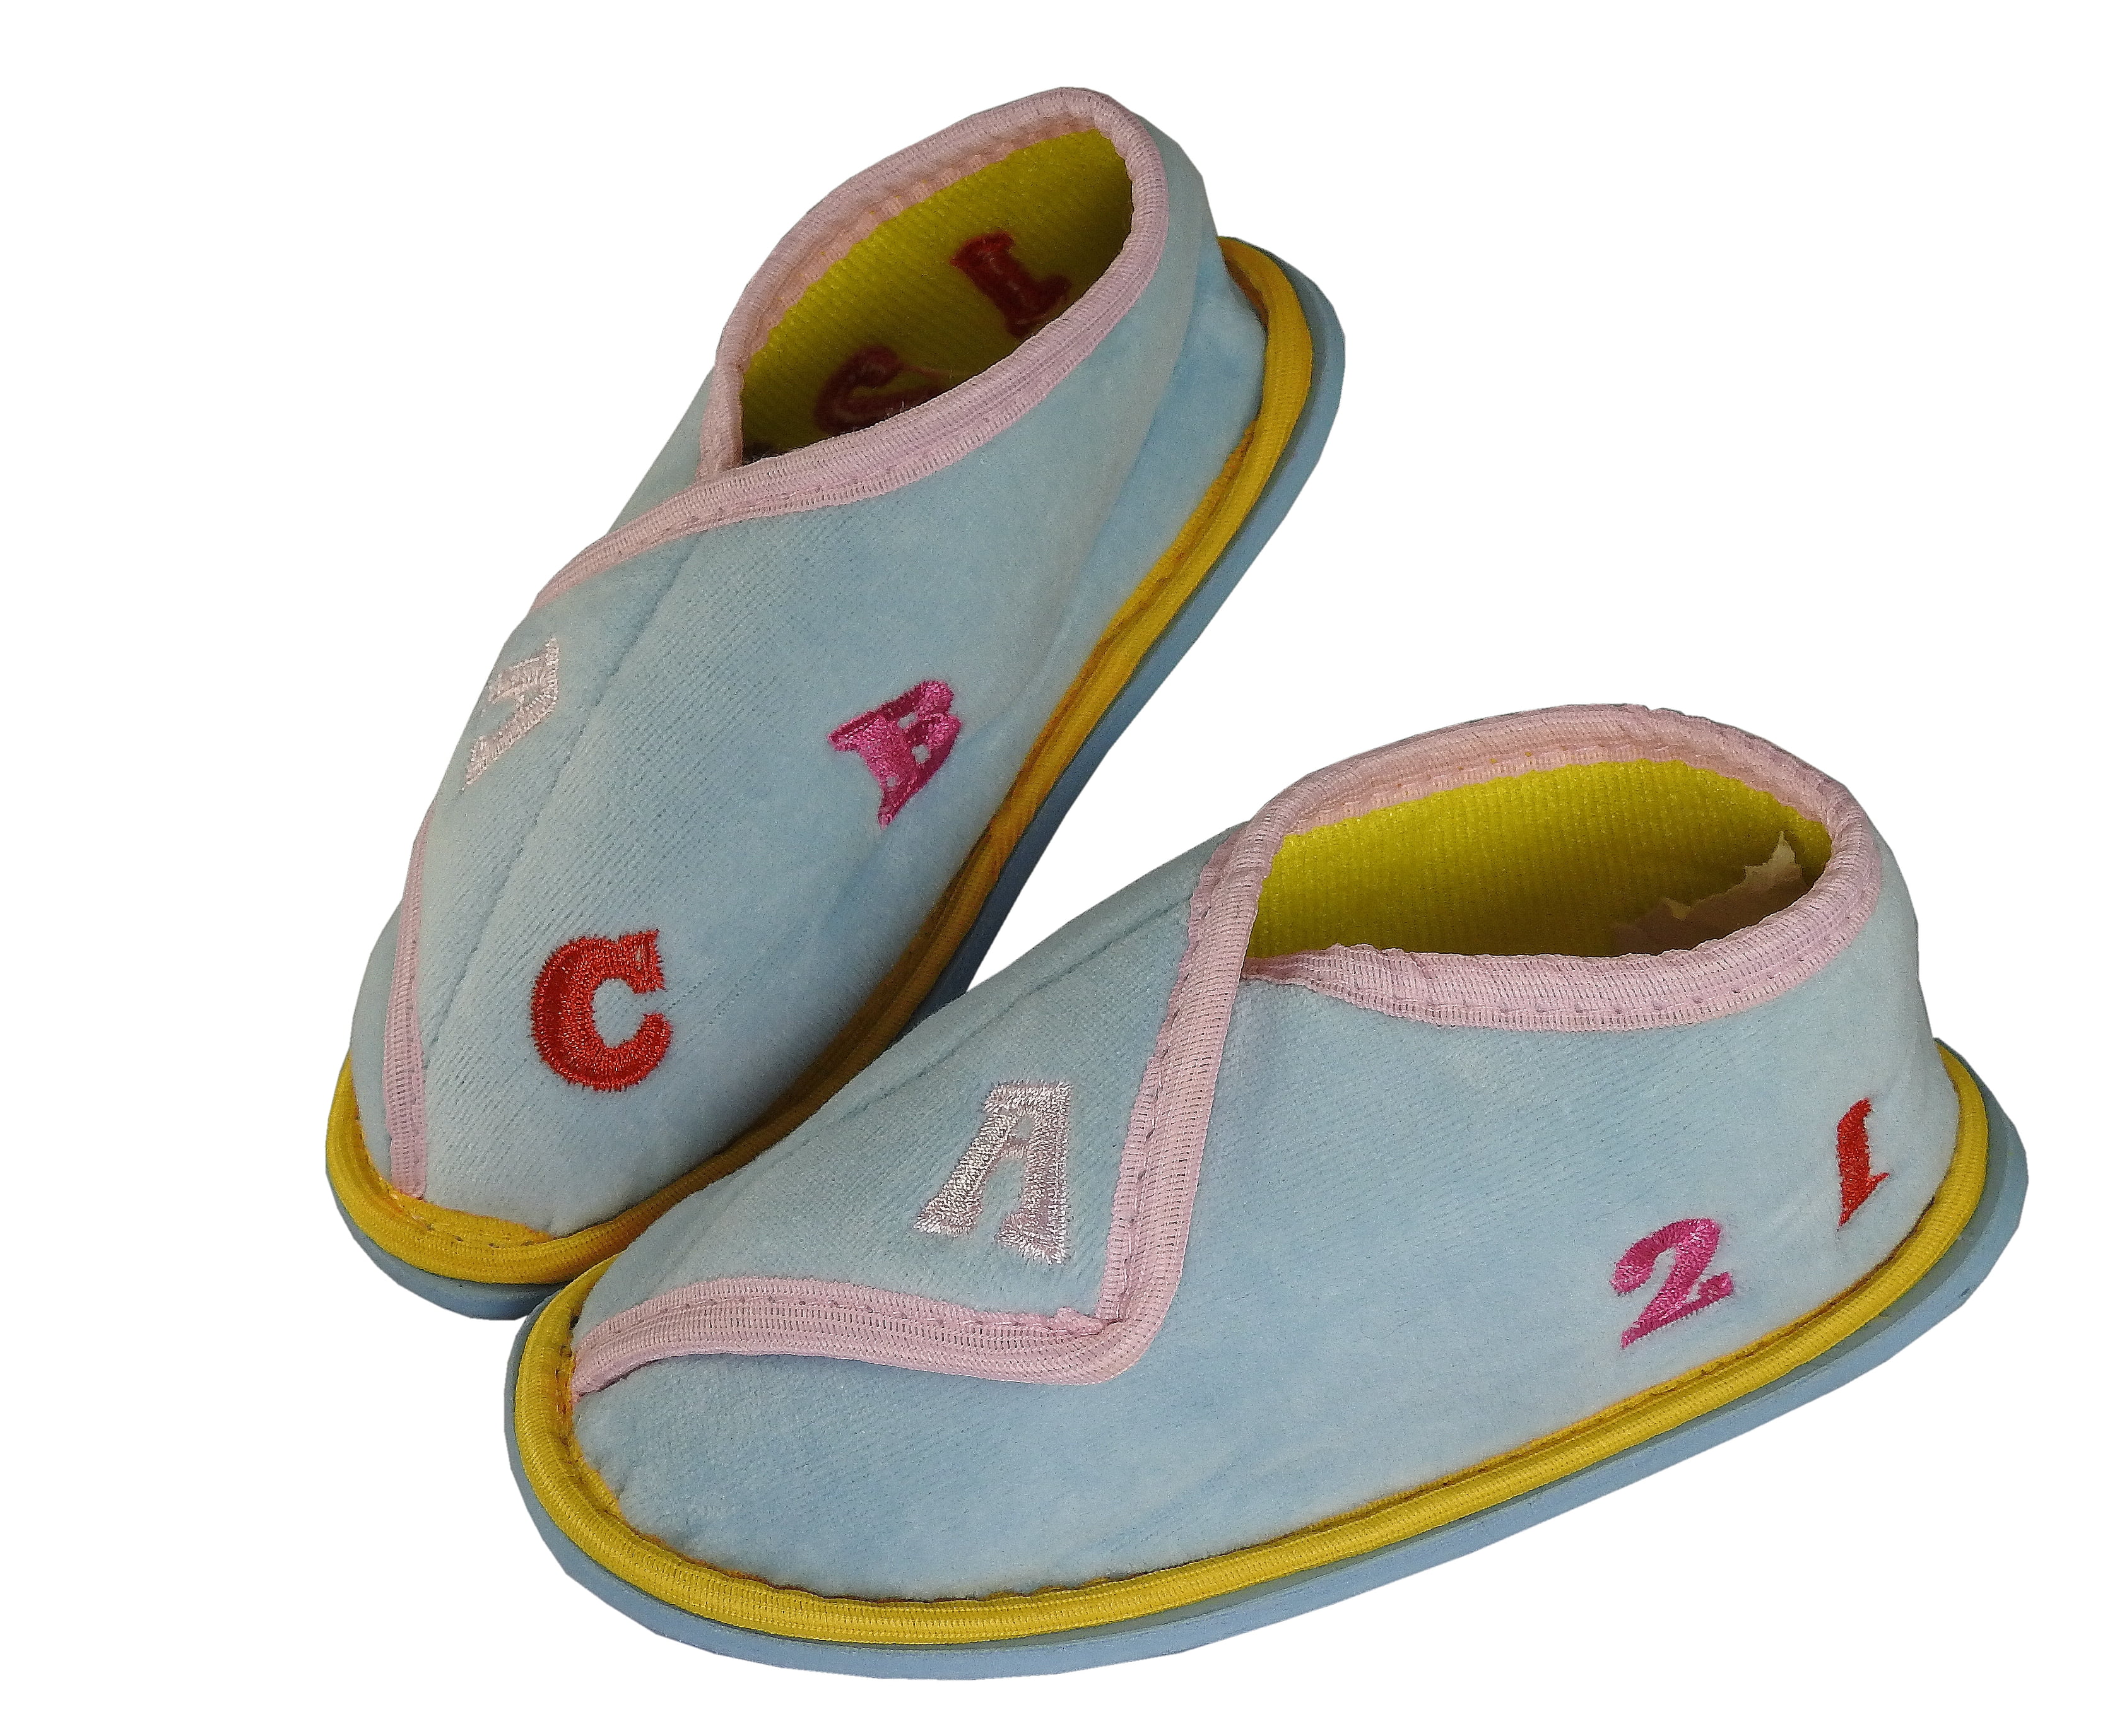 kids outdoor slippers